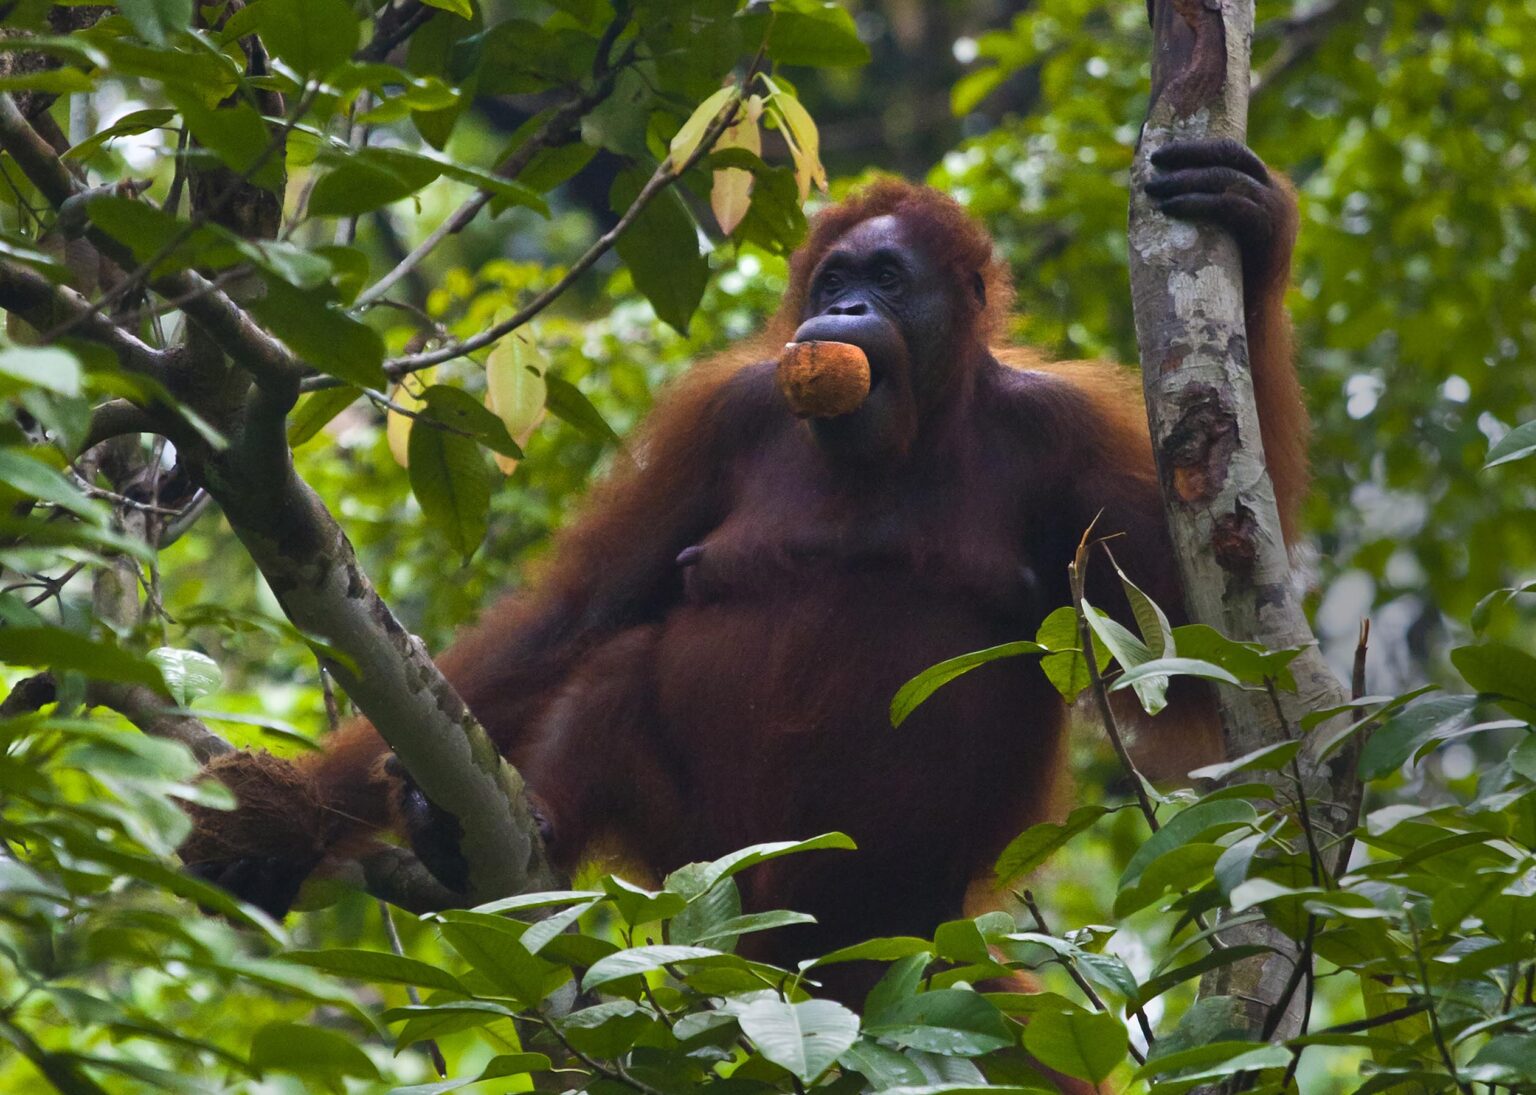 A wild female ORANGUTAN (Pongo pygmaeus) eats a coconut at the SEMENGGOK ORANGUTAN REHABILITATION CENTER - KUCHING, SARAWAK, BORNEO